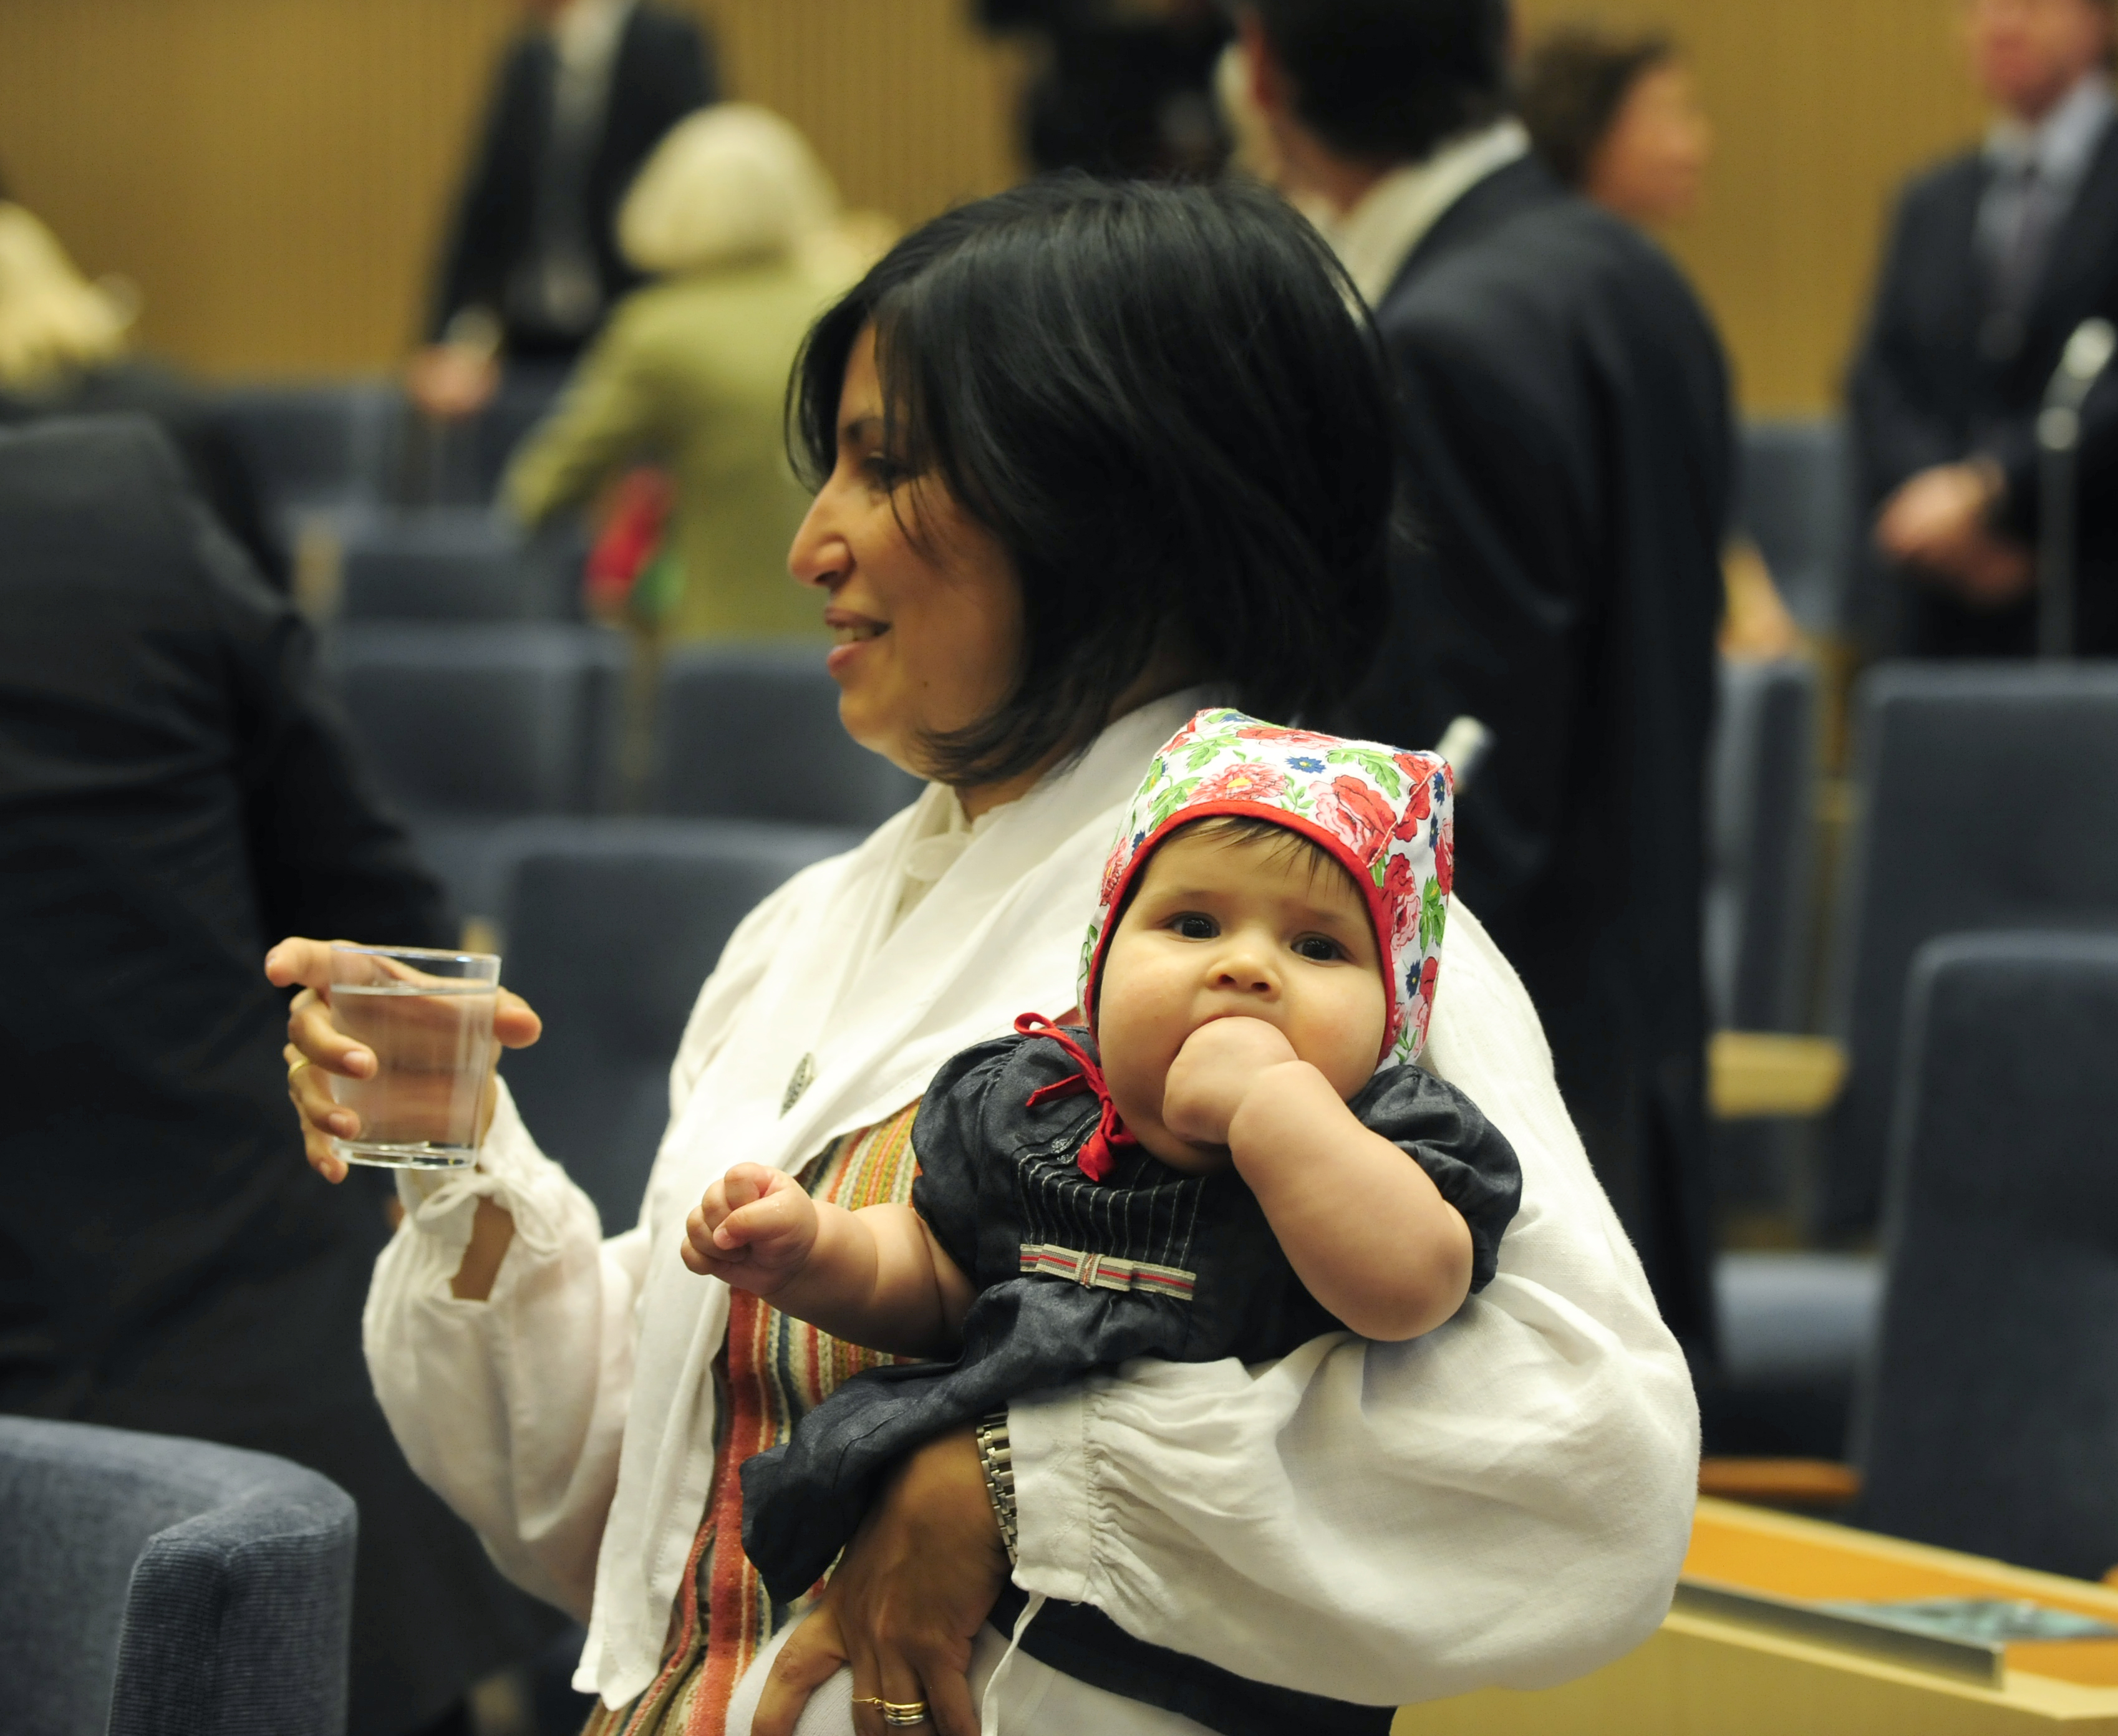 Rossana Dinamarca med dottern Vida då 3 1/2 månad gammal, på armen i riksdagens plenisal  i Stockholm inför Riksmötets öppnande 2008.